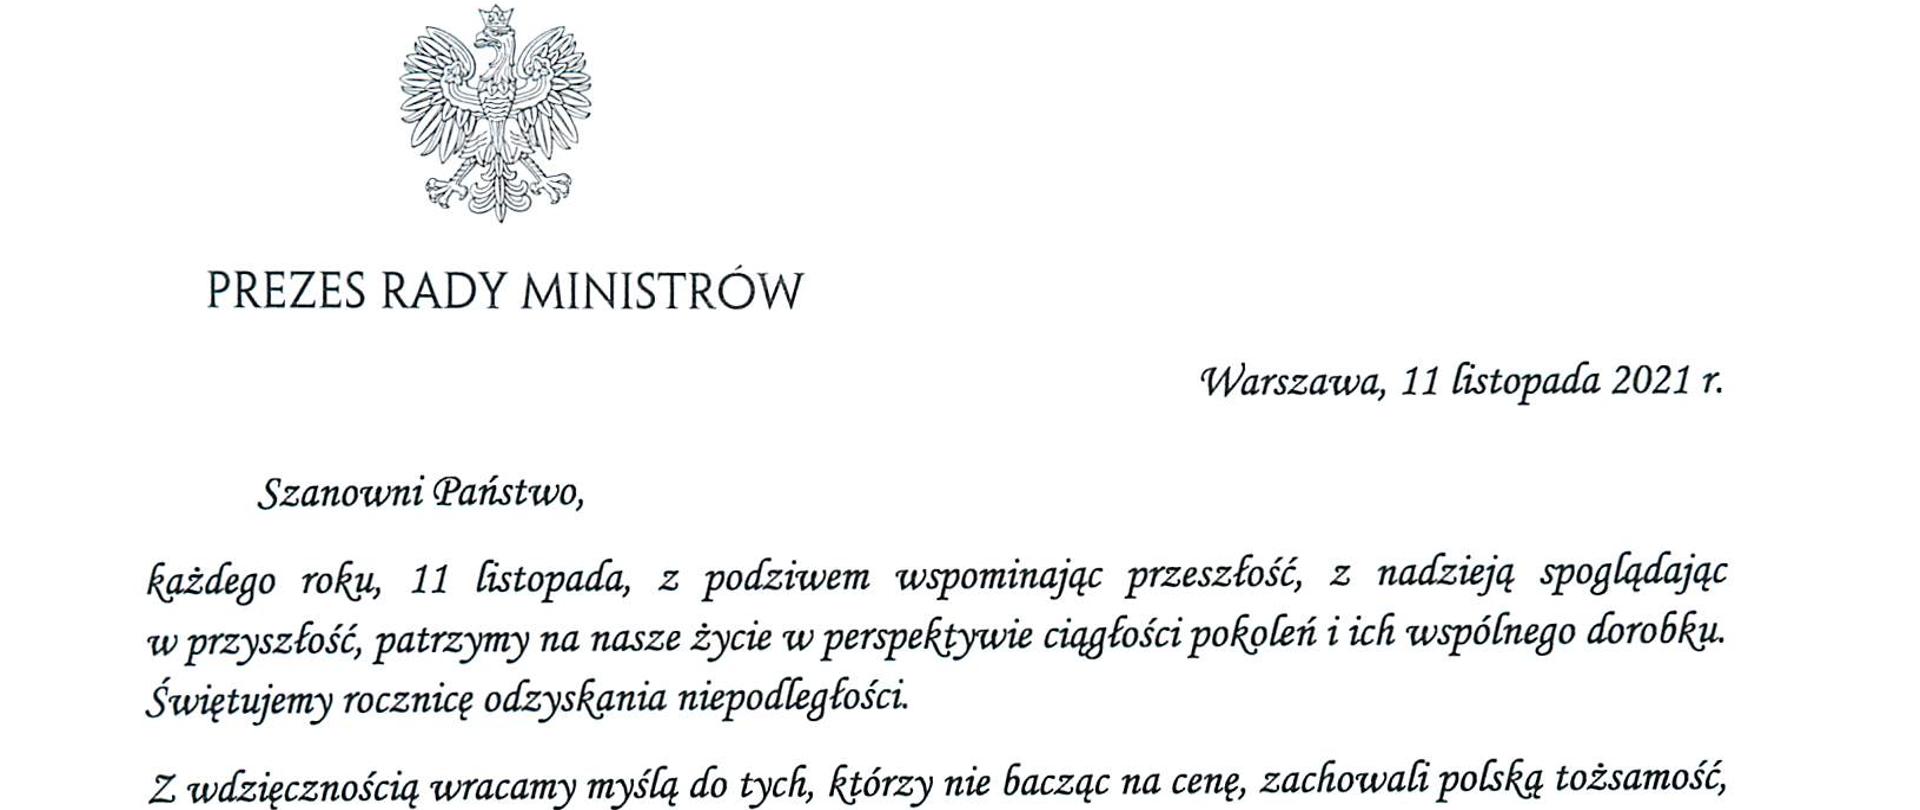 Zdjęcie przedstawia list Prezesa Rady Ministrów z życzeniami z okazji Dnia Niepodległości dla członków Służby Cywilnej.